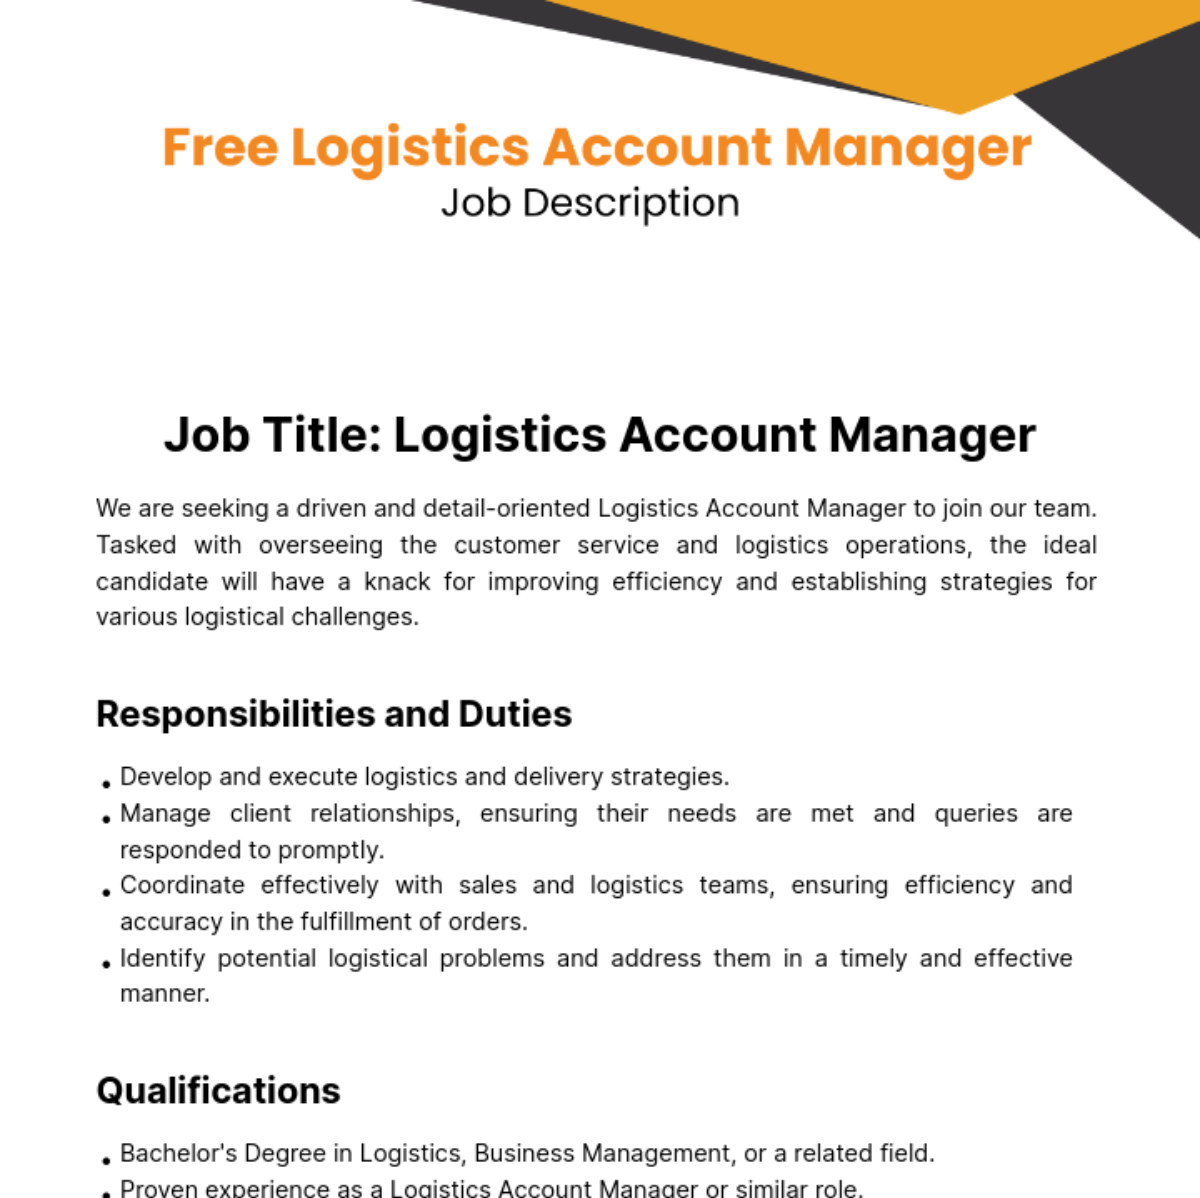 Free Logistics Account Manager Job Description Template